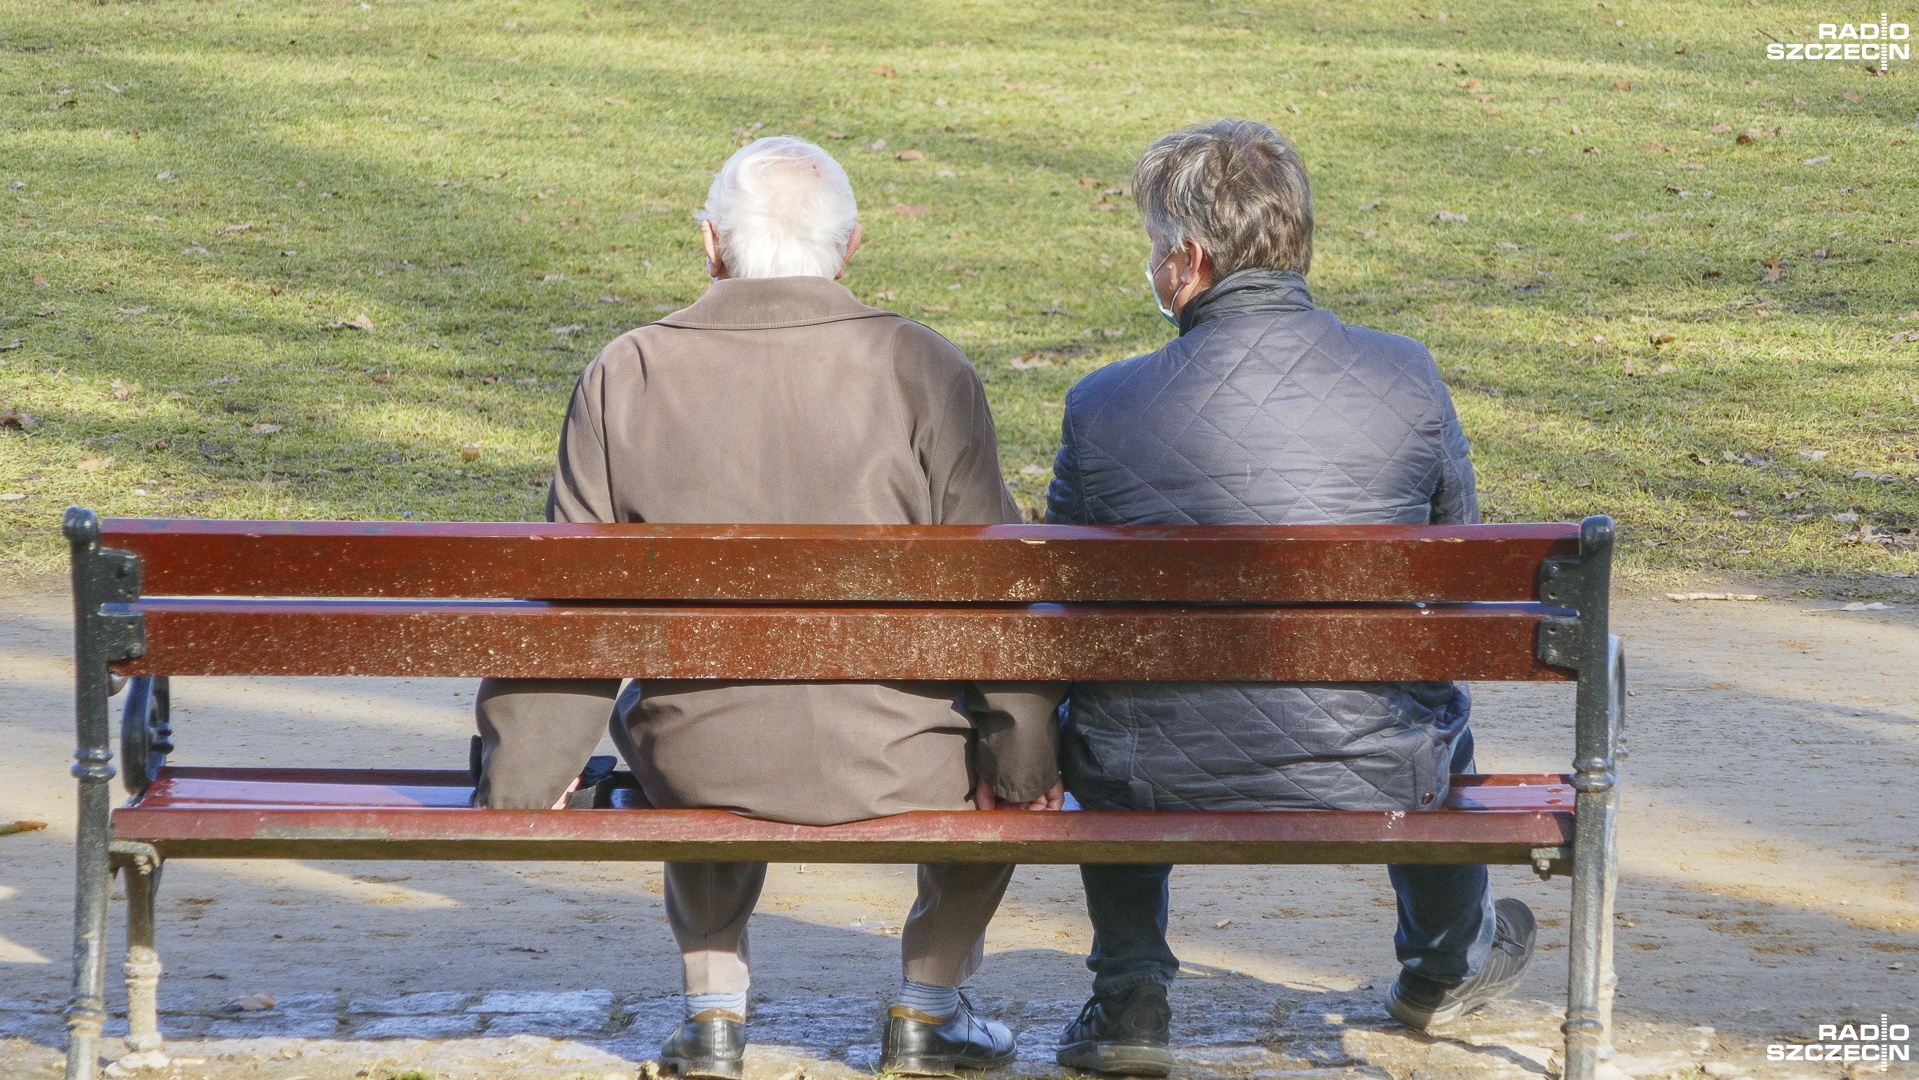 Rzepa o pytaniu referendalnym w sprawie wieku emerytalnego: To wydmuszka